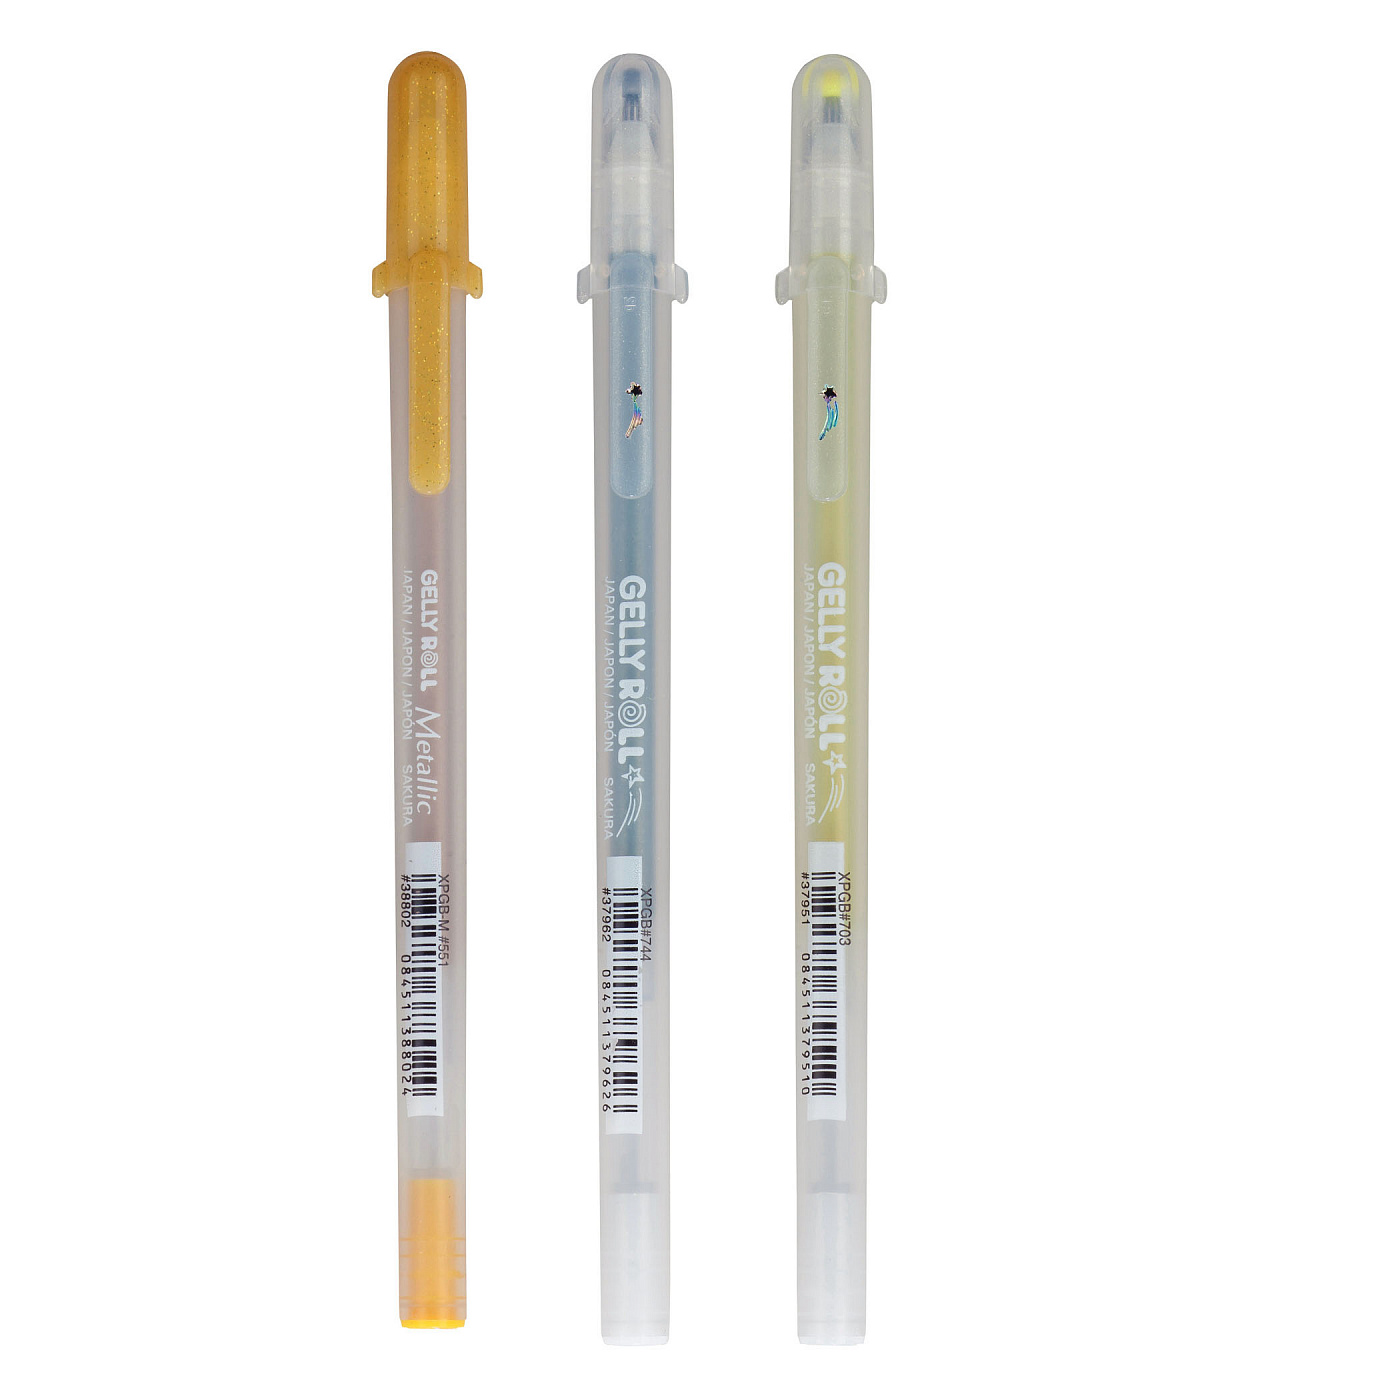 Ручка гелевая Gelly Roll, разные цвета ручки гелевые gelly roll sakura 3 штуки